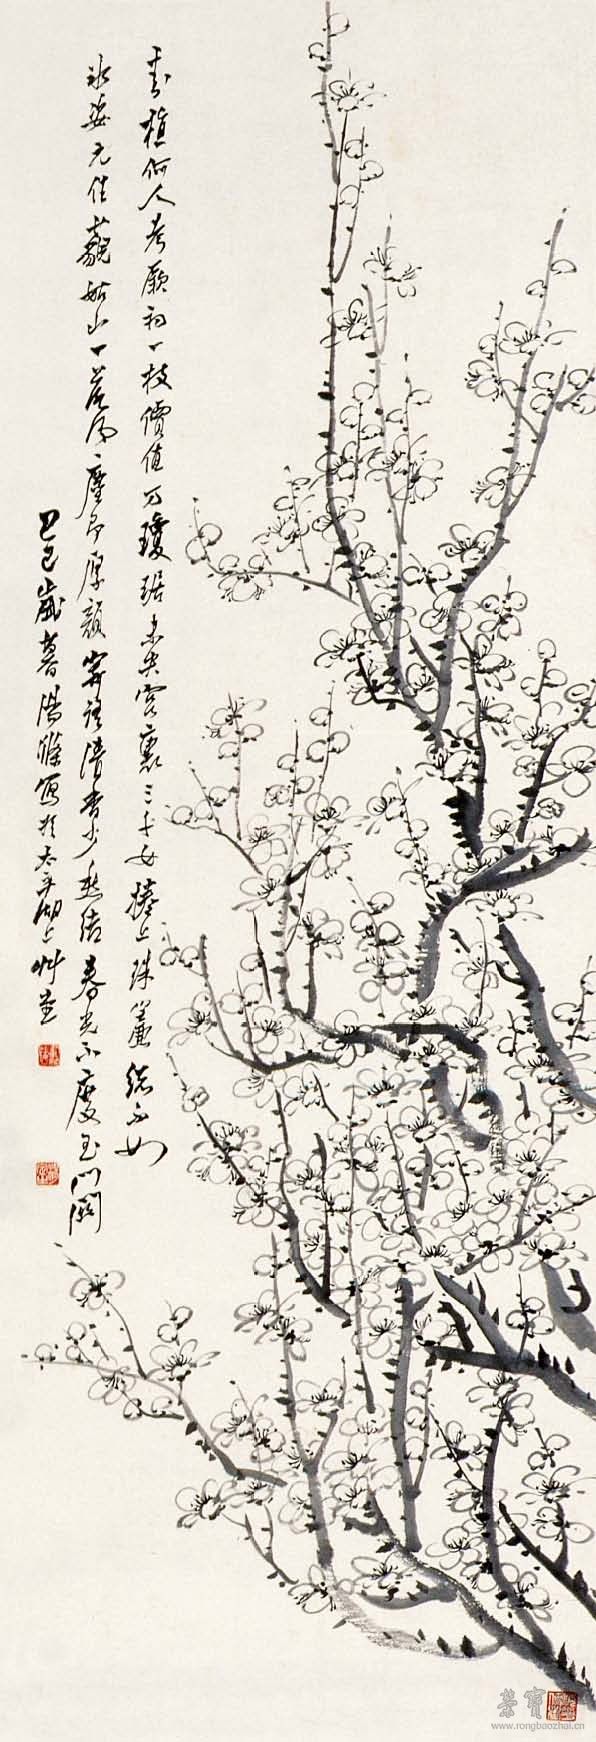 汤定之 墨梅 49cm×216cm1929 北京画院藏